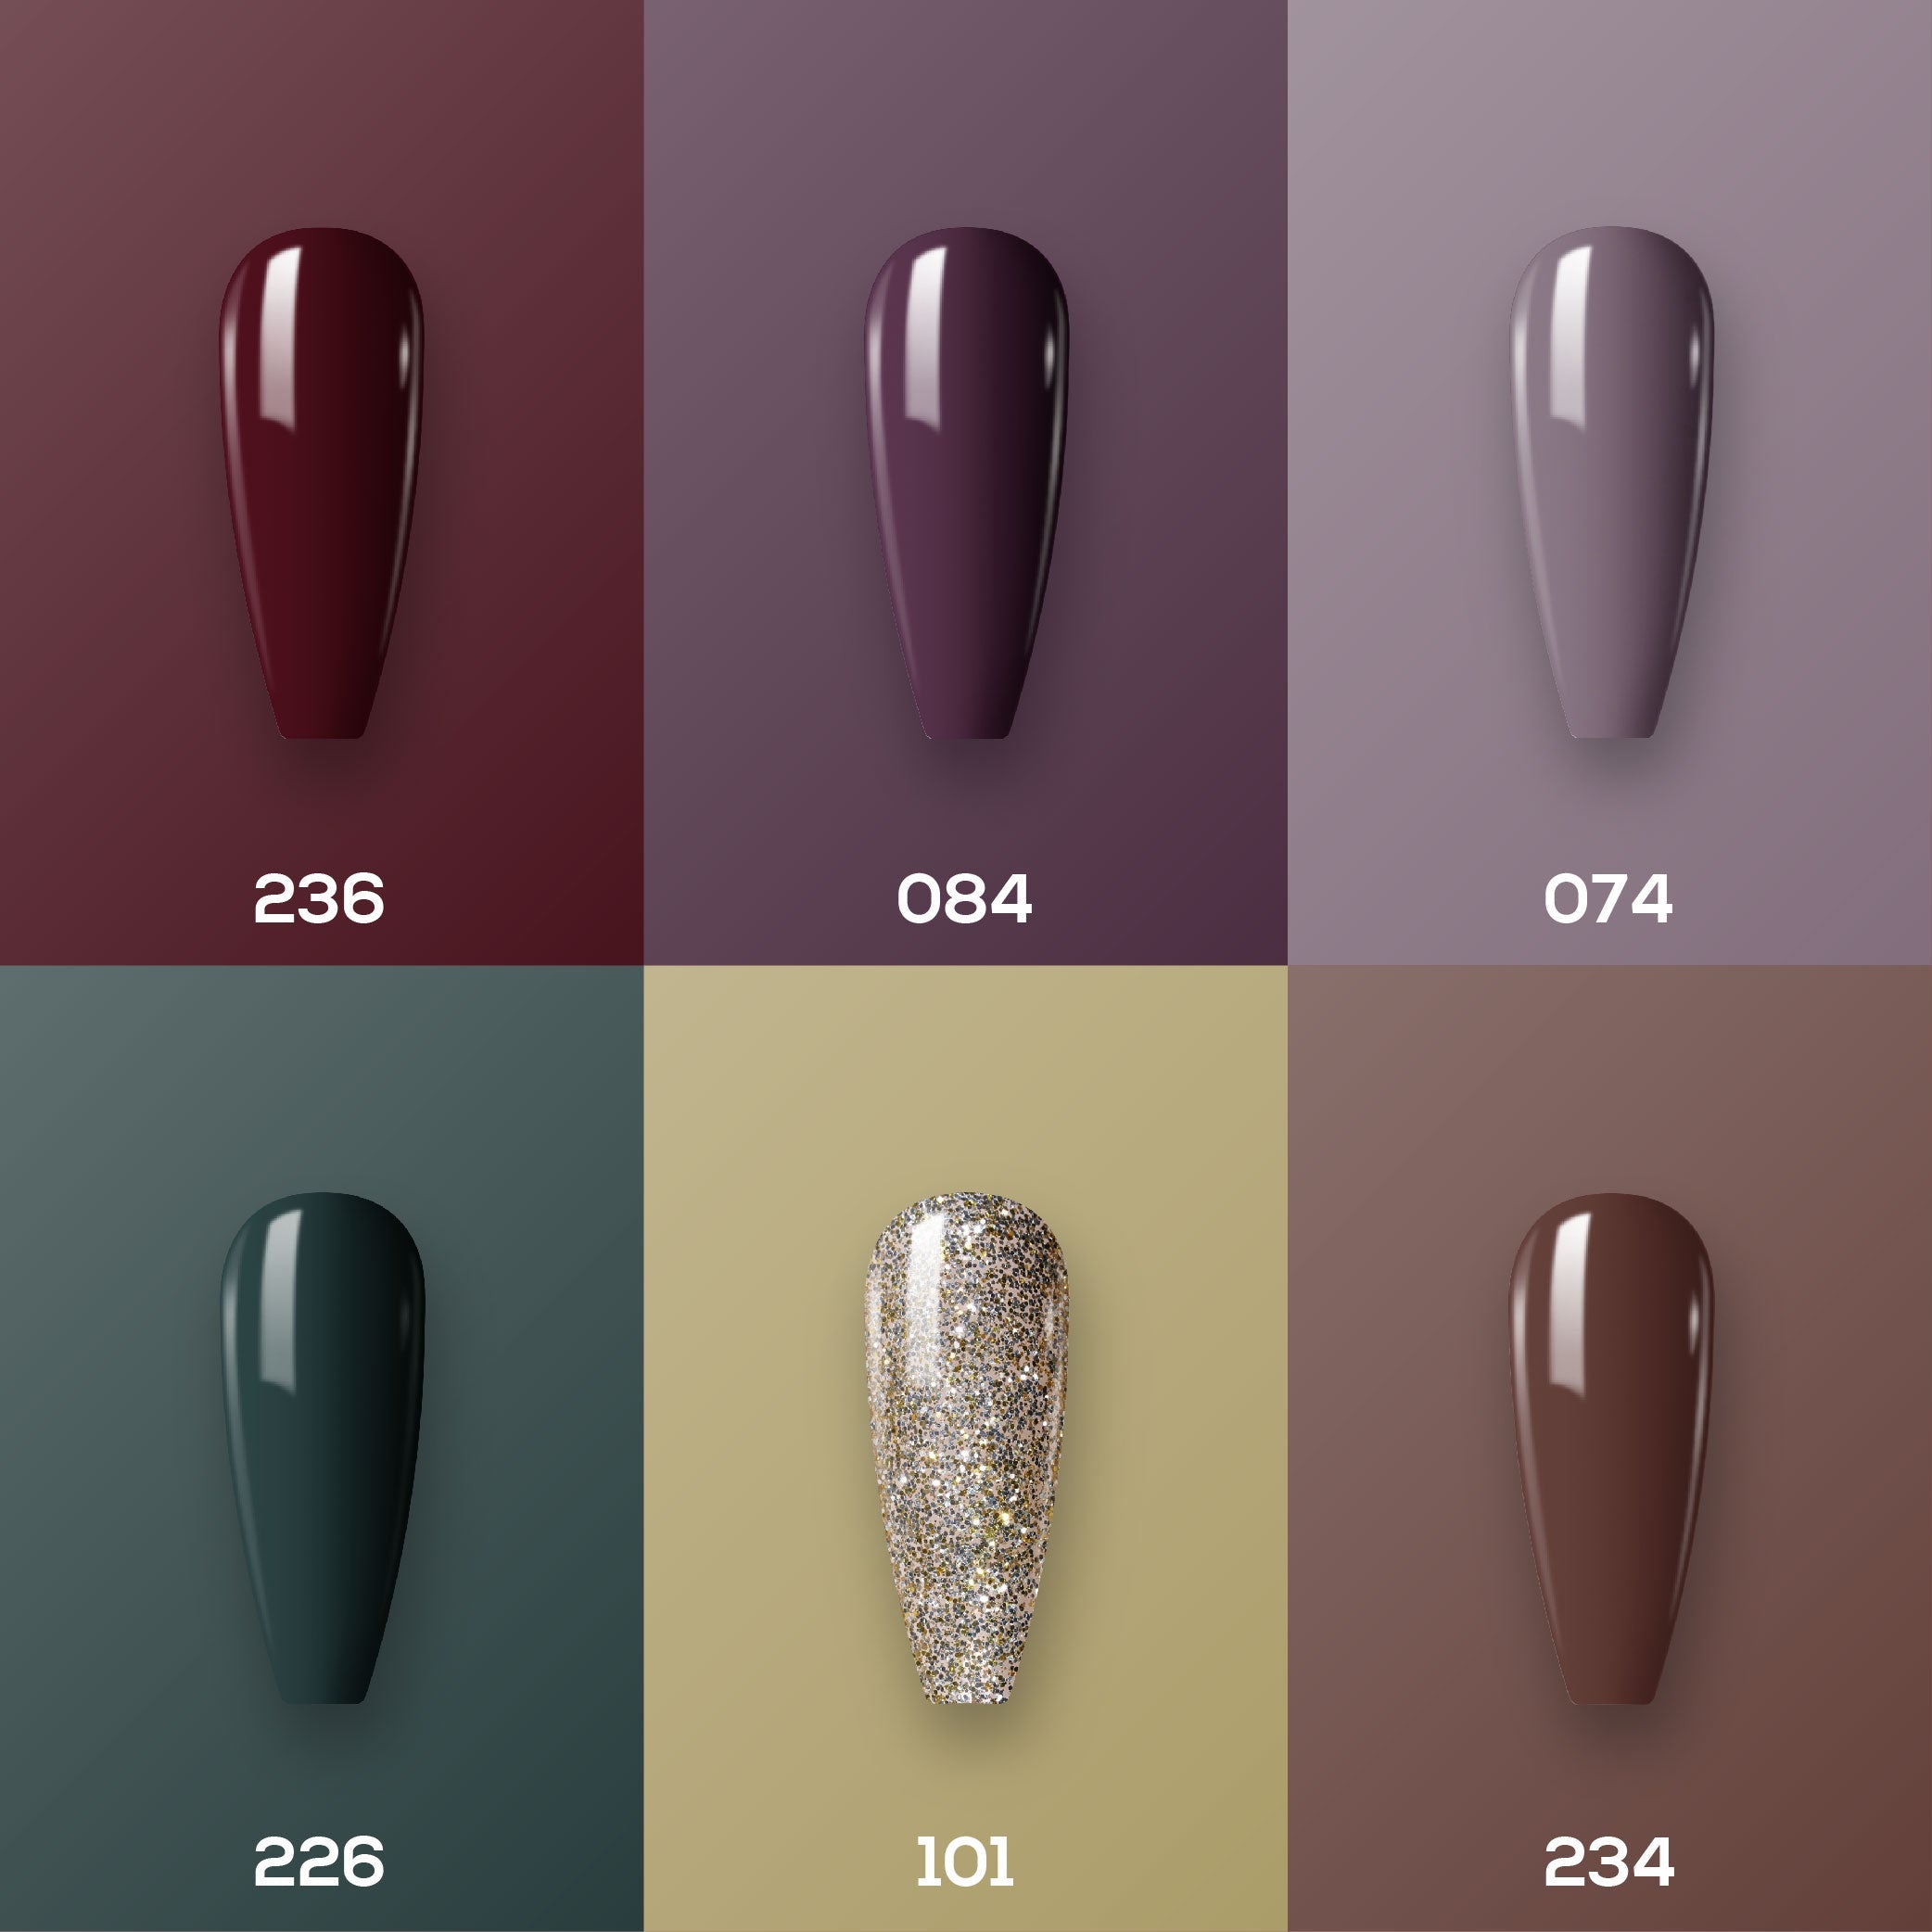 Lavis Healthy Nail Lacquer  Set N5 (6 colors) : 236, 084, 074, 226, 101, 234